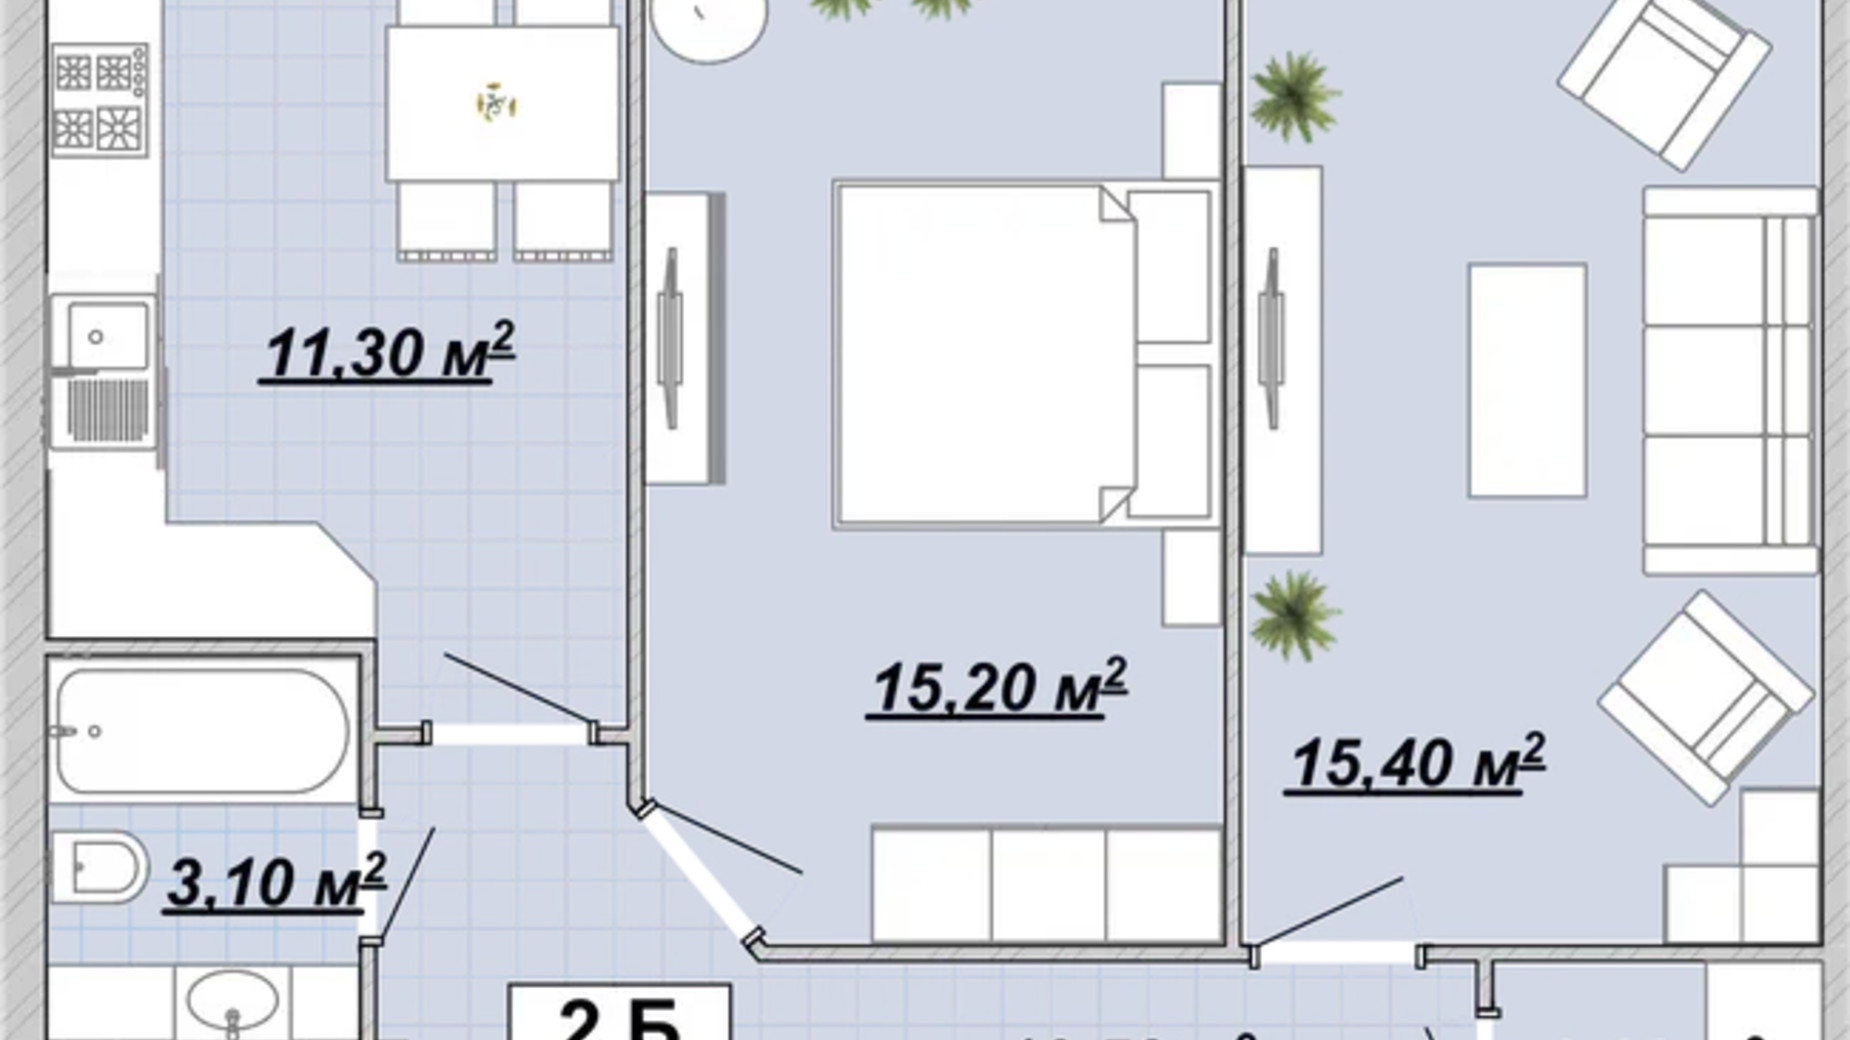 Планування 2-кімнатної квартири в Житловий район Княгинин 62.8 м², фото 706403